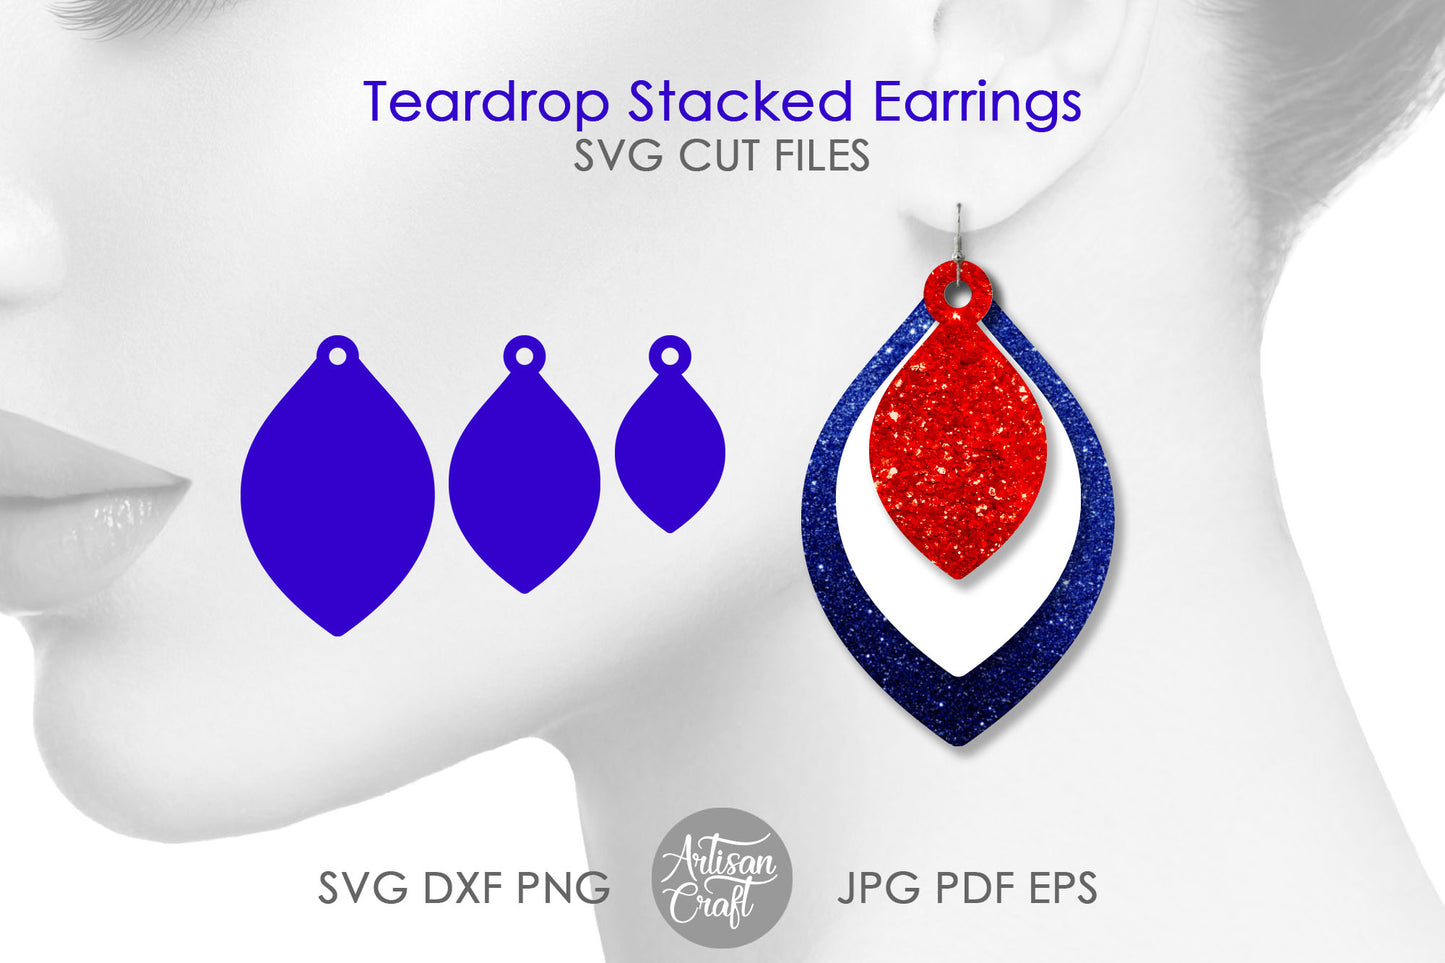 Stacked Teardrop Earrings SVG files